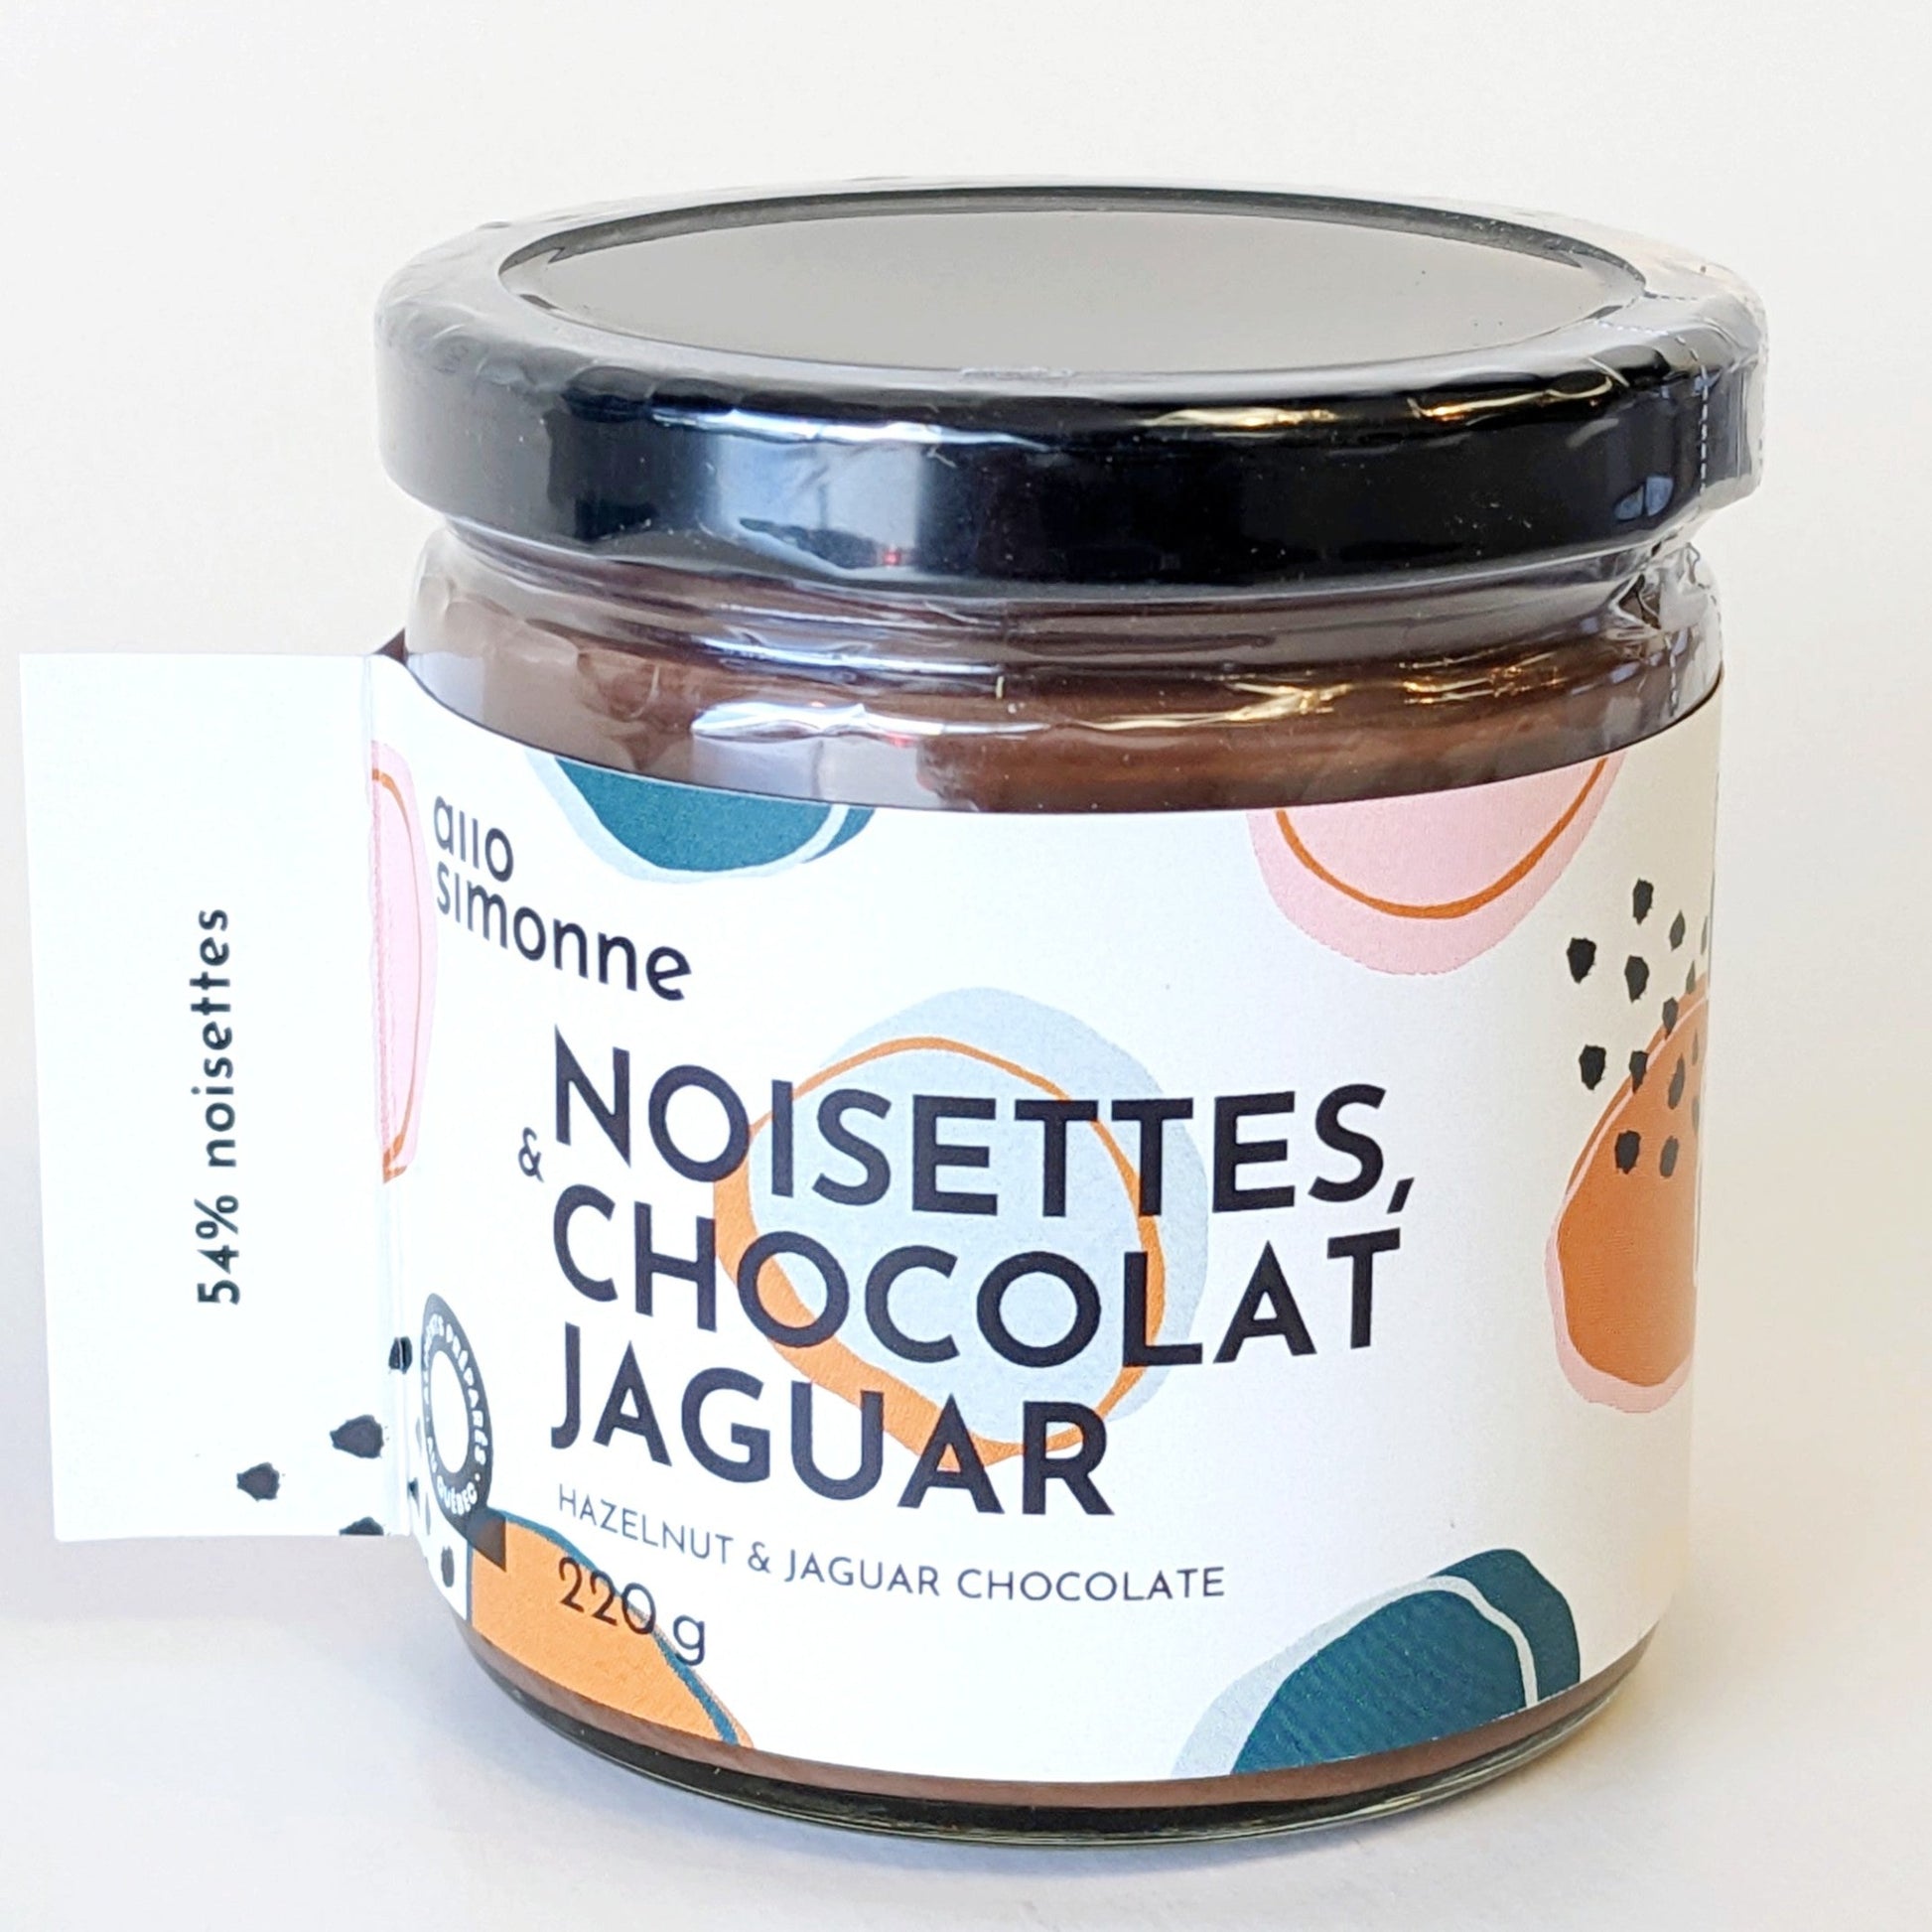 Tartinade Noisettes et chocolat Jaguar - Allo Simonne